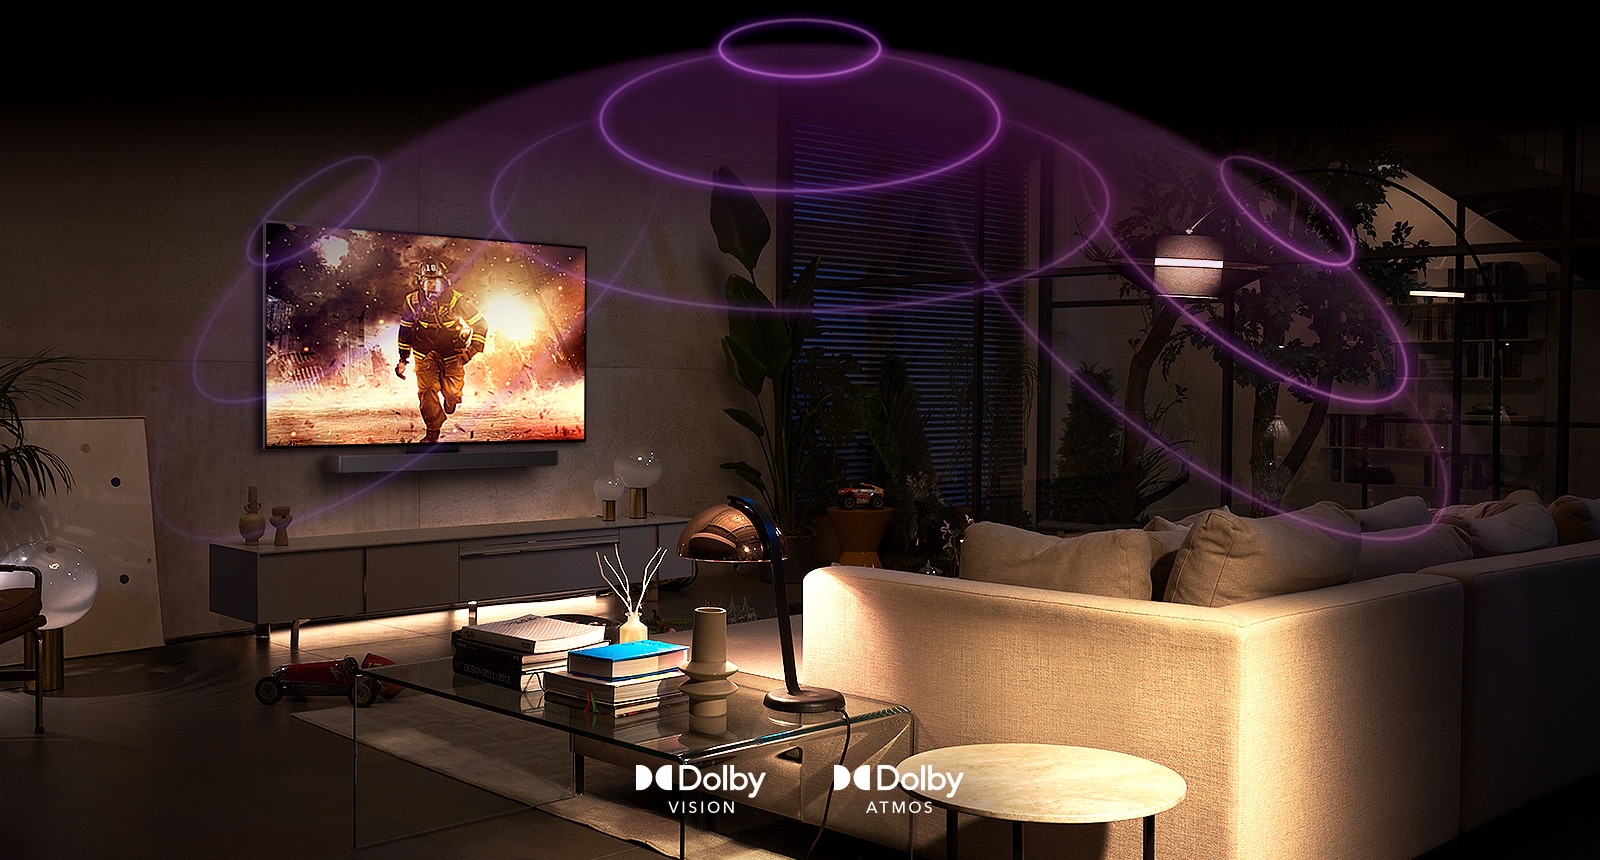 صورة لتلفزيون LG OLED في غرفة يعرض أحد أفلام الحركة. تشكل الموجات الصوتية قبة بين الأريكة والتلفزيون، مما يصور الصوت المكاني الغامر.